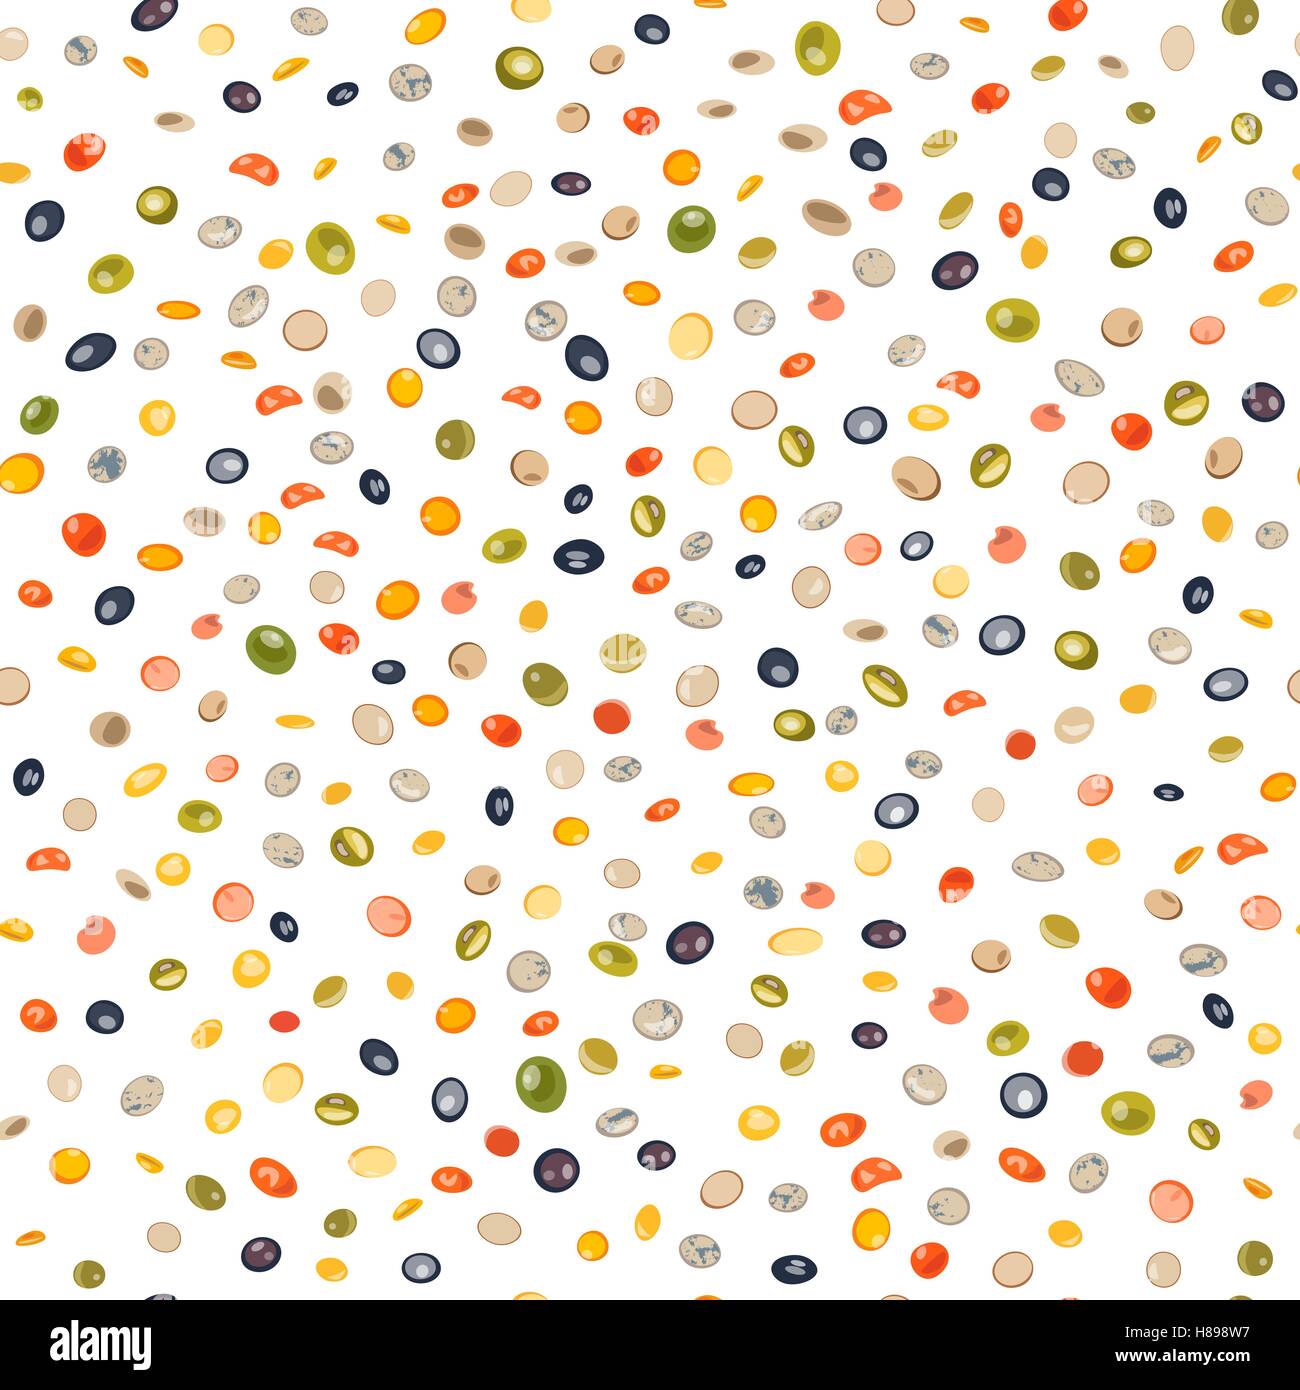 Nahtlose Muster Arten von Linsen gelb, braun, grün, rot, französische grüne, schwarze Linsen. Vektor-illustration Stock Vektor